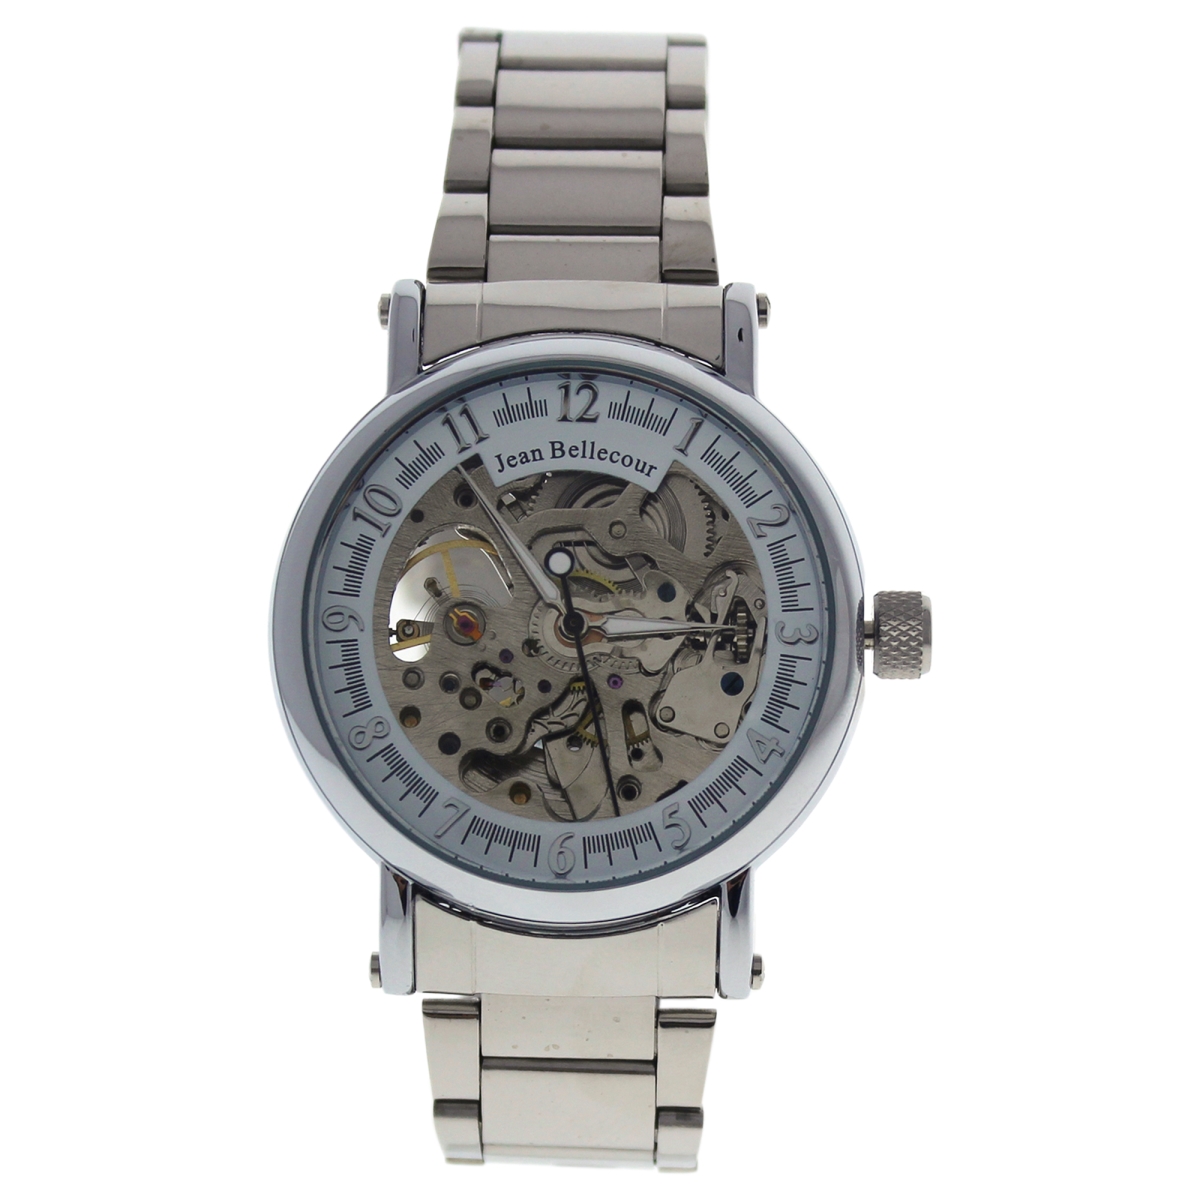 M-wat-1350 Silver Stainless Steel Bracelet Watch For Men - Redh1